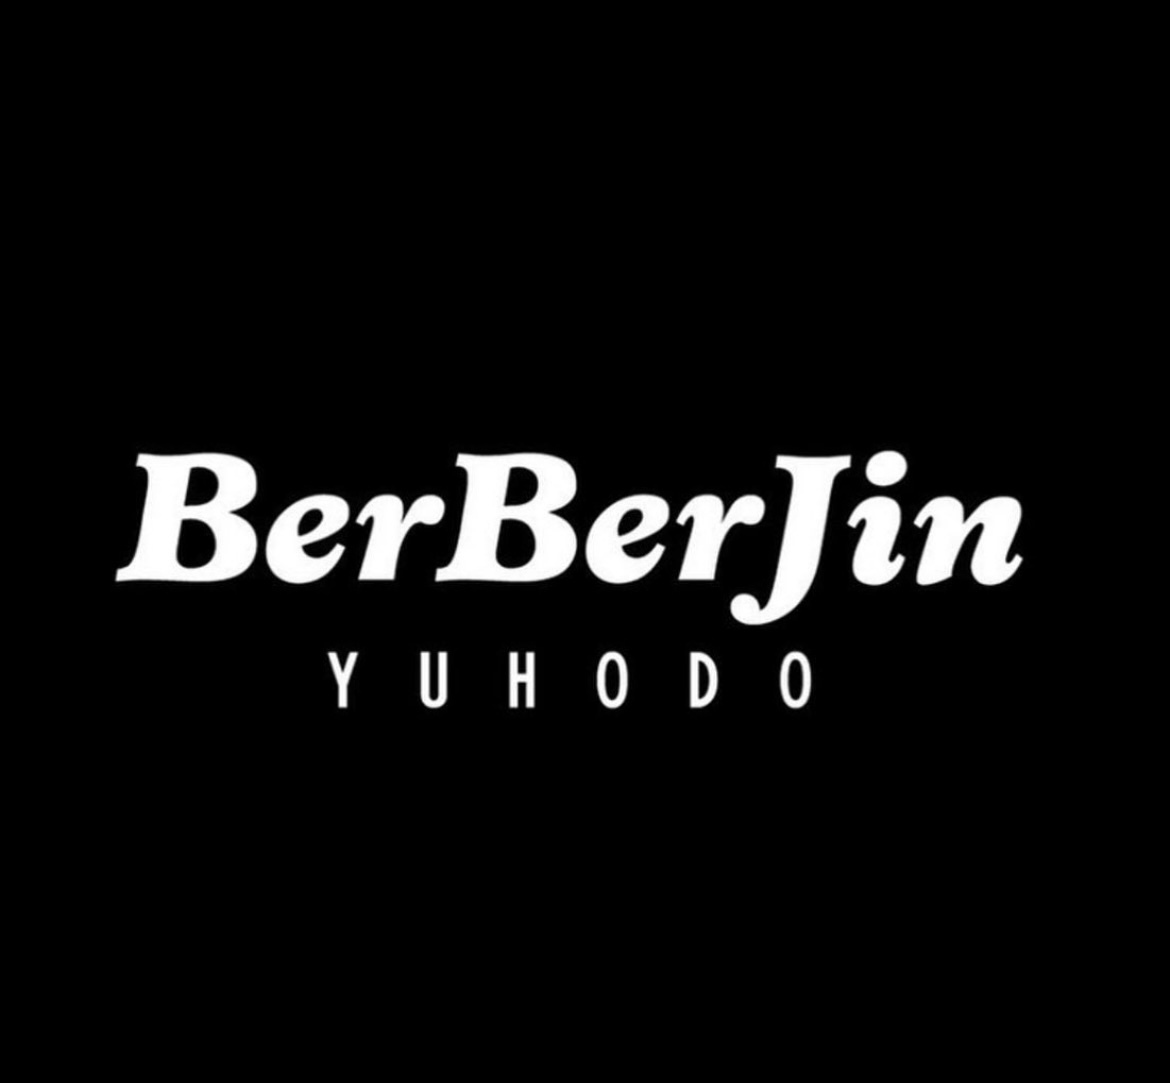 BerBerJin Yuhodo